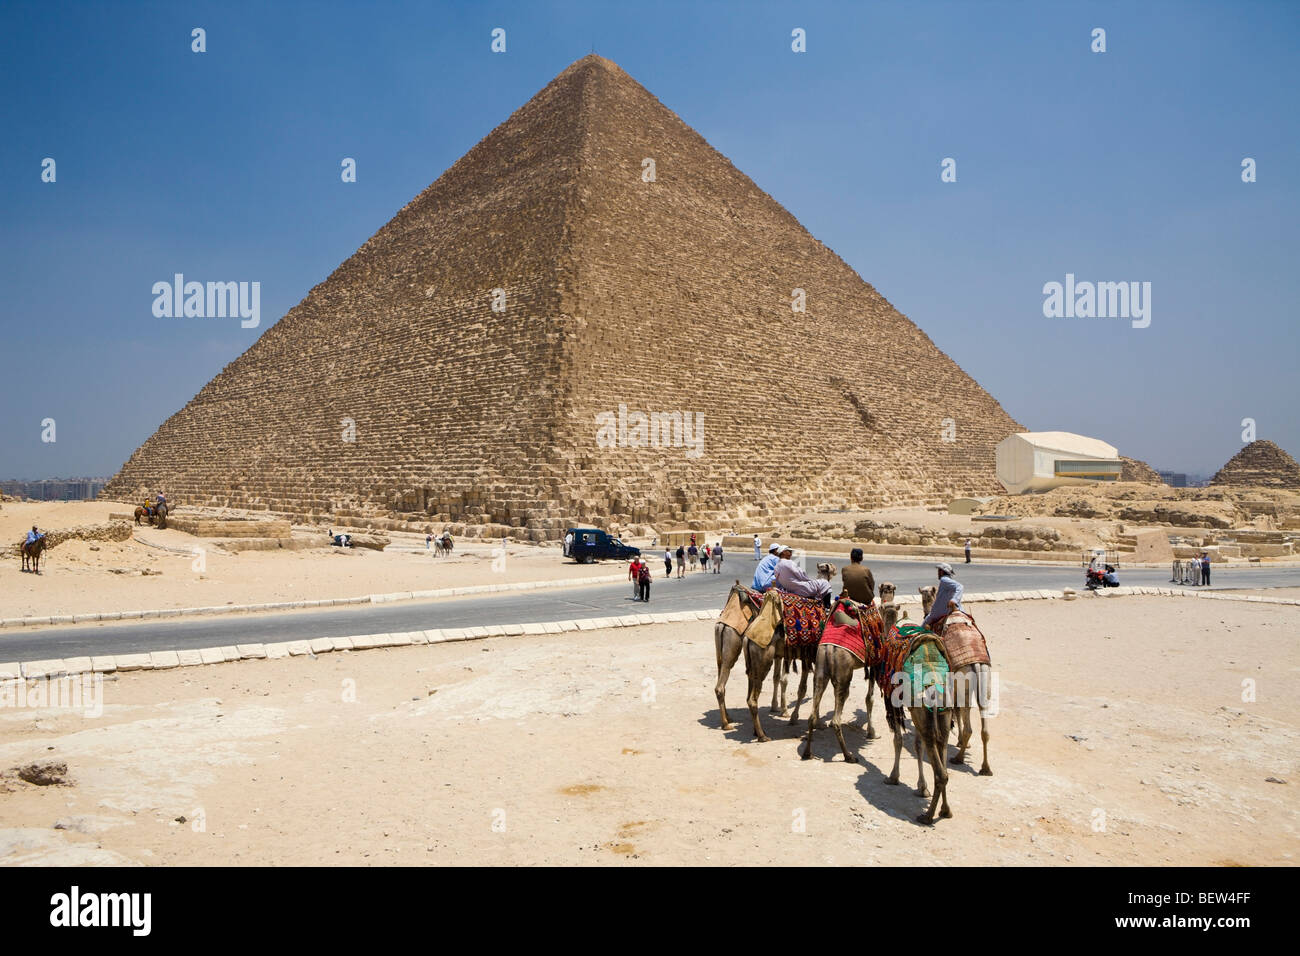 Pyramide de Khéops, Le Caire, Egypte Banque D'Images